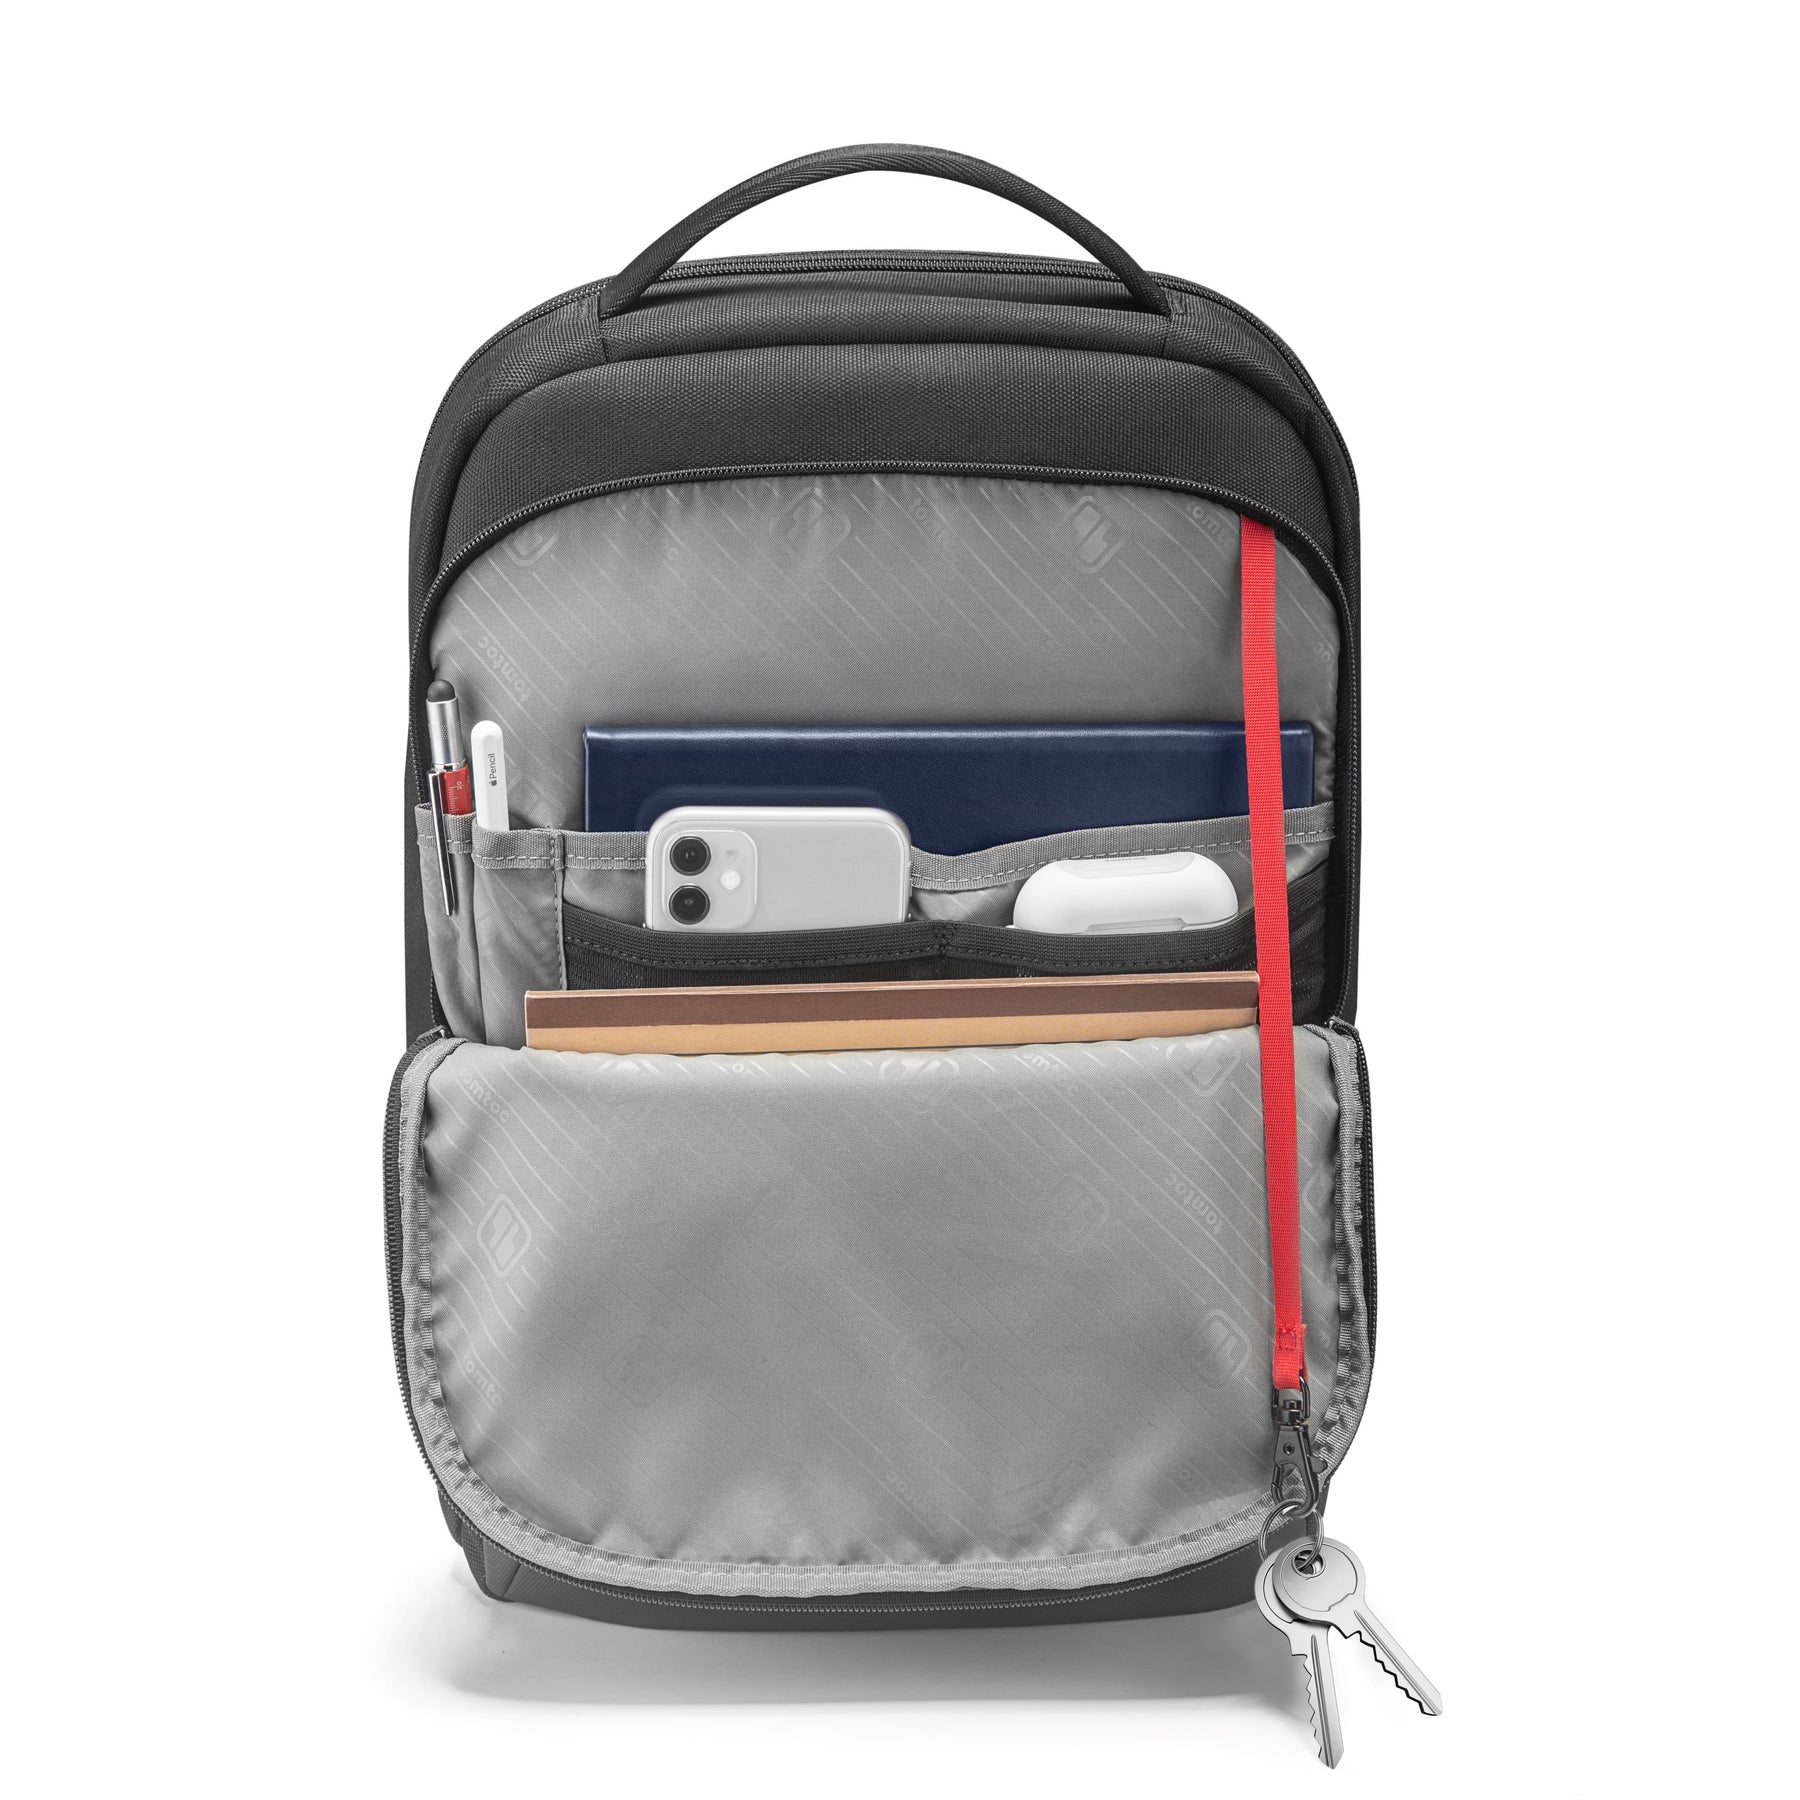 Explorer-T60 Laptop Backpack Black 16-inch